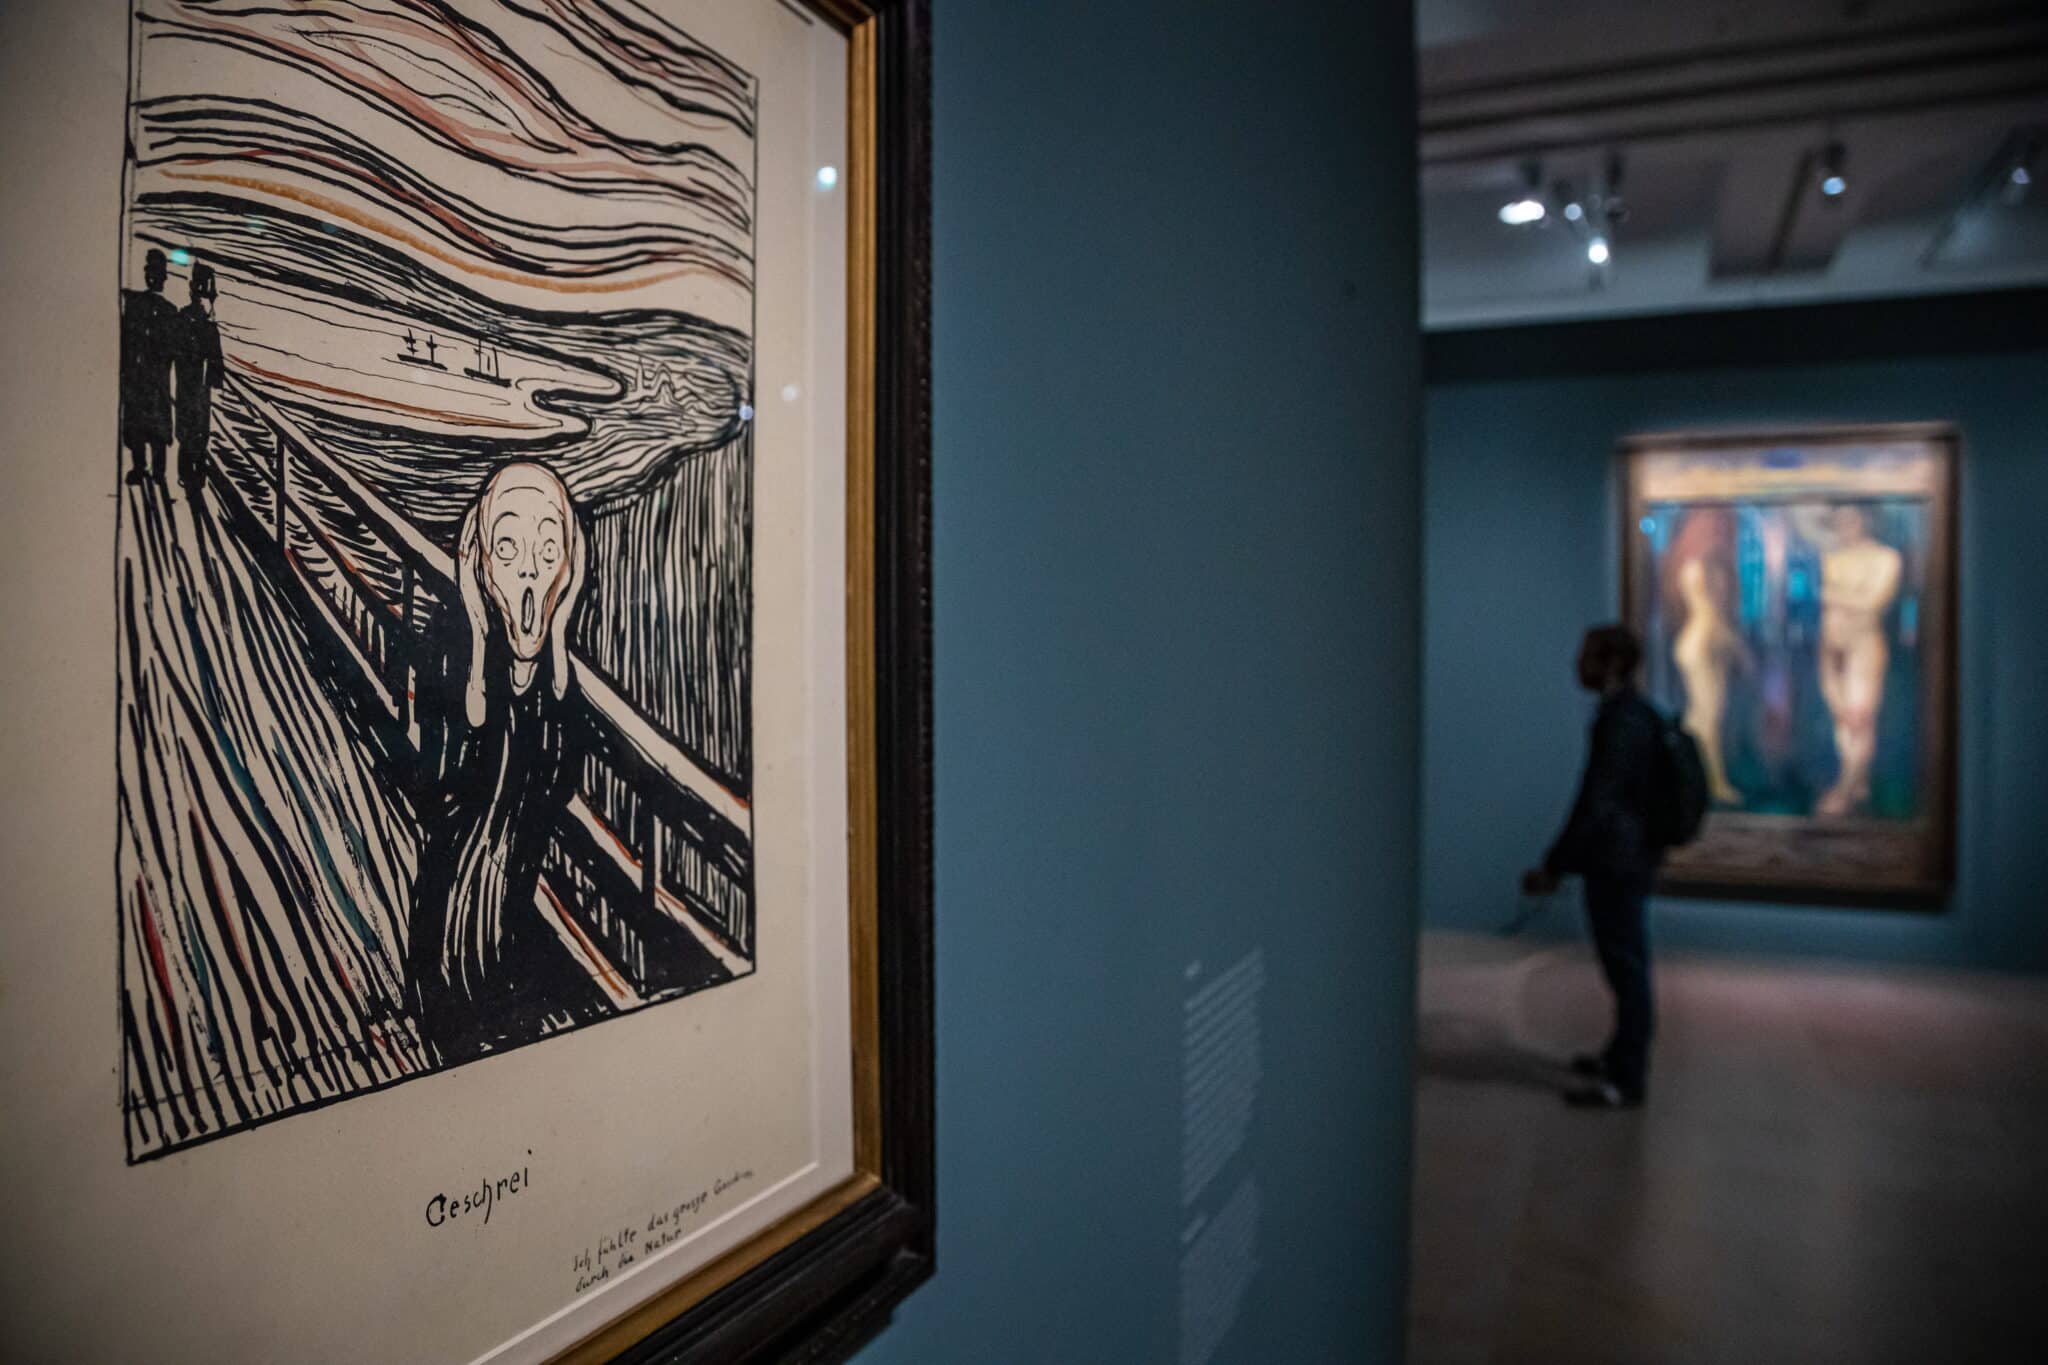 'Un poema de amor, de vida y de muerte', Munch más allá de 'El Grito'